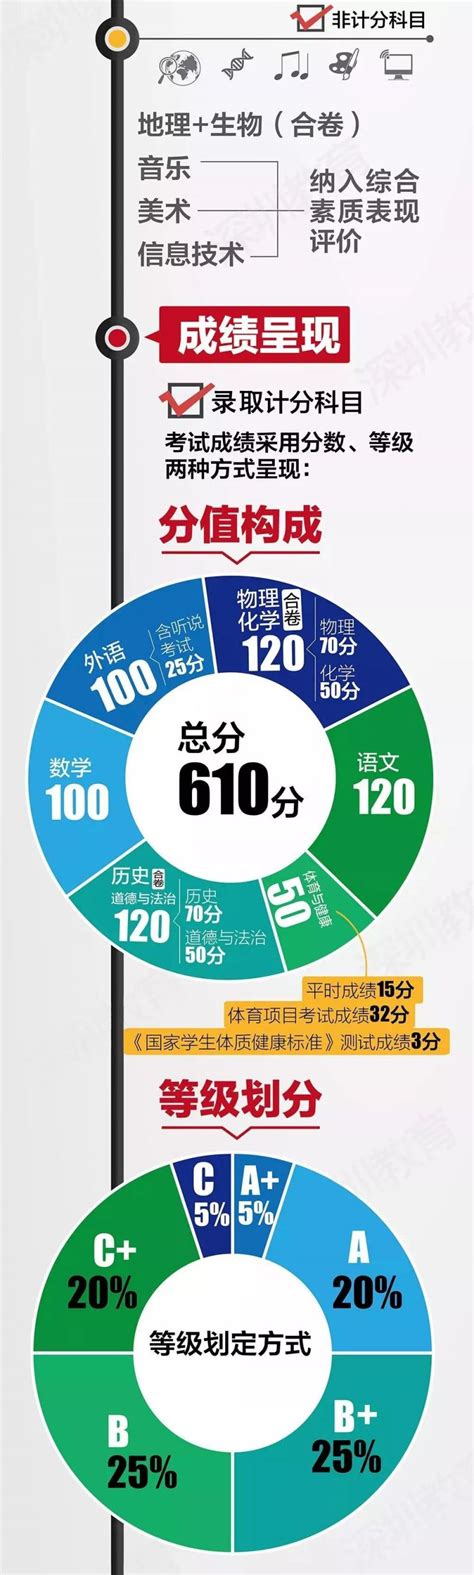 2021年深圳中考方案有大变化 总分增至610 - 深圳本地宝